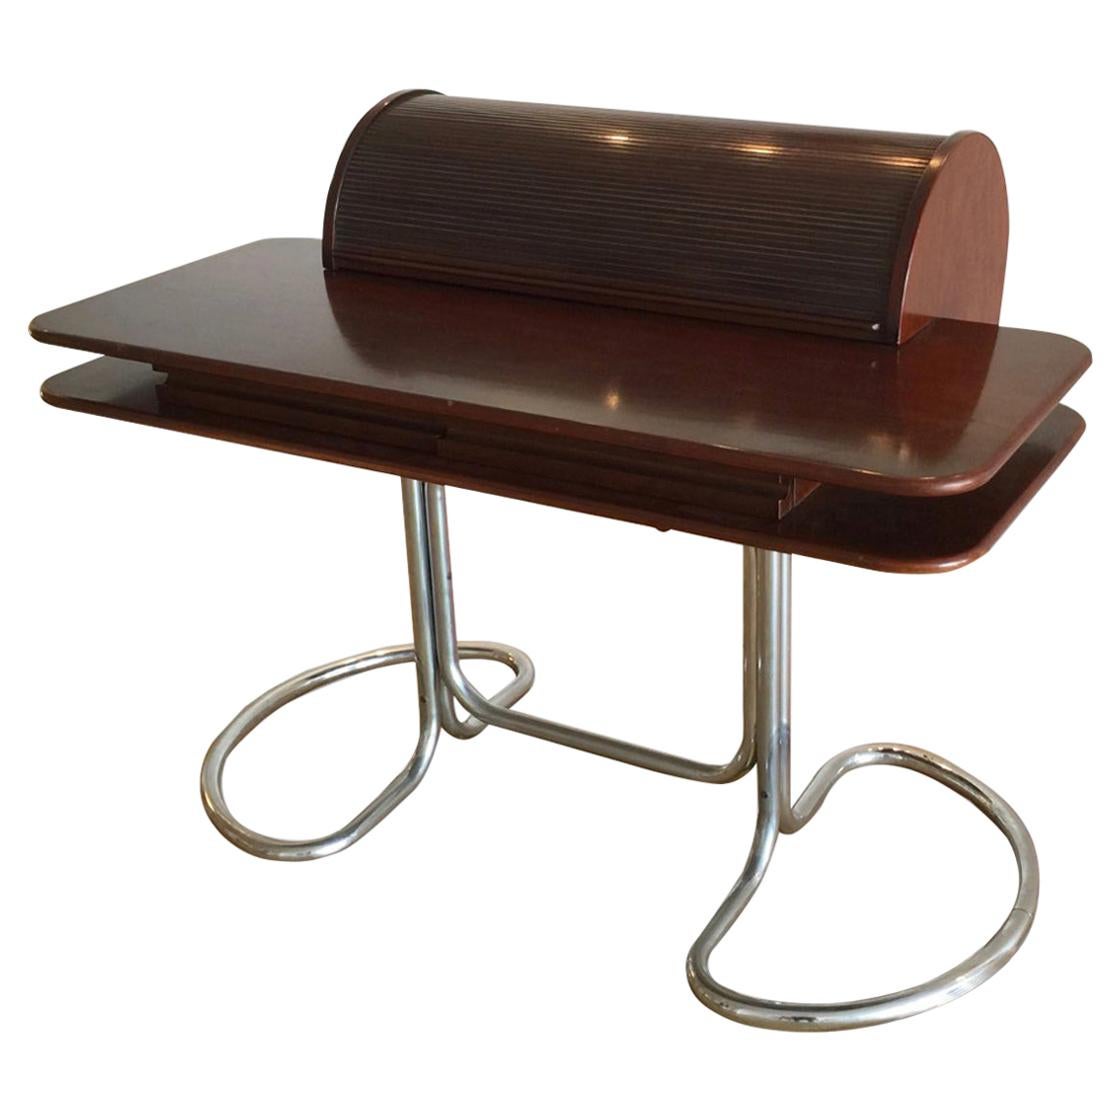 'Maia' Roll Top Desk by Giotto Stoppino, circa 1969